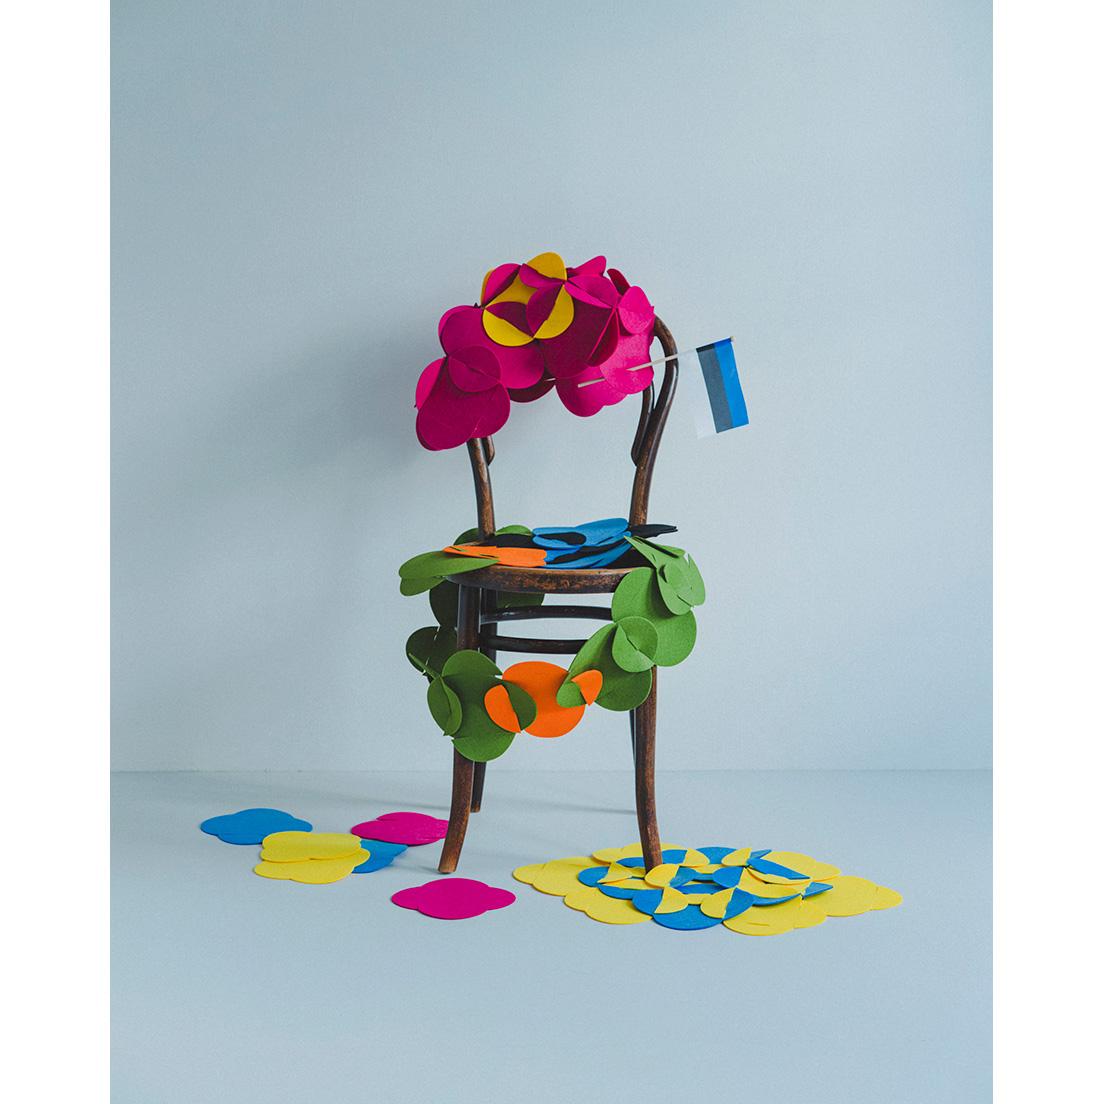 Costume Puzzle / コスチューム・パズル　レゴブロックで遊ぶように、小さなピースを組み合わせて様々な形を作ることが可能なフェルトのパズル。ファッションデザイナーのカレン・コリュスが2014年、大学在学時に開発。